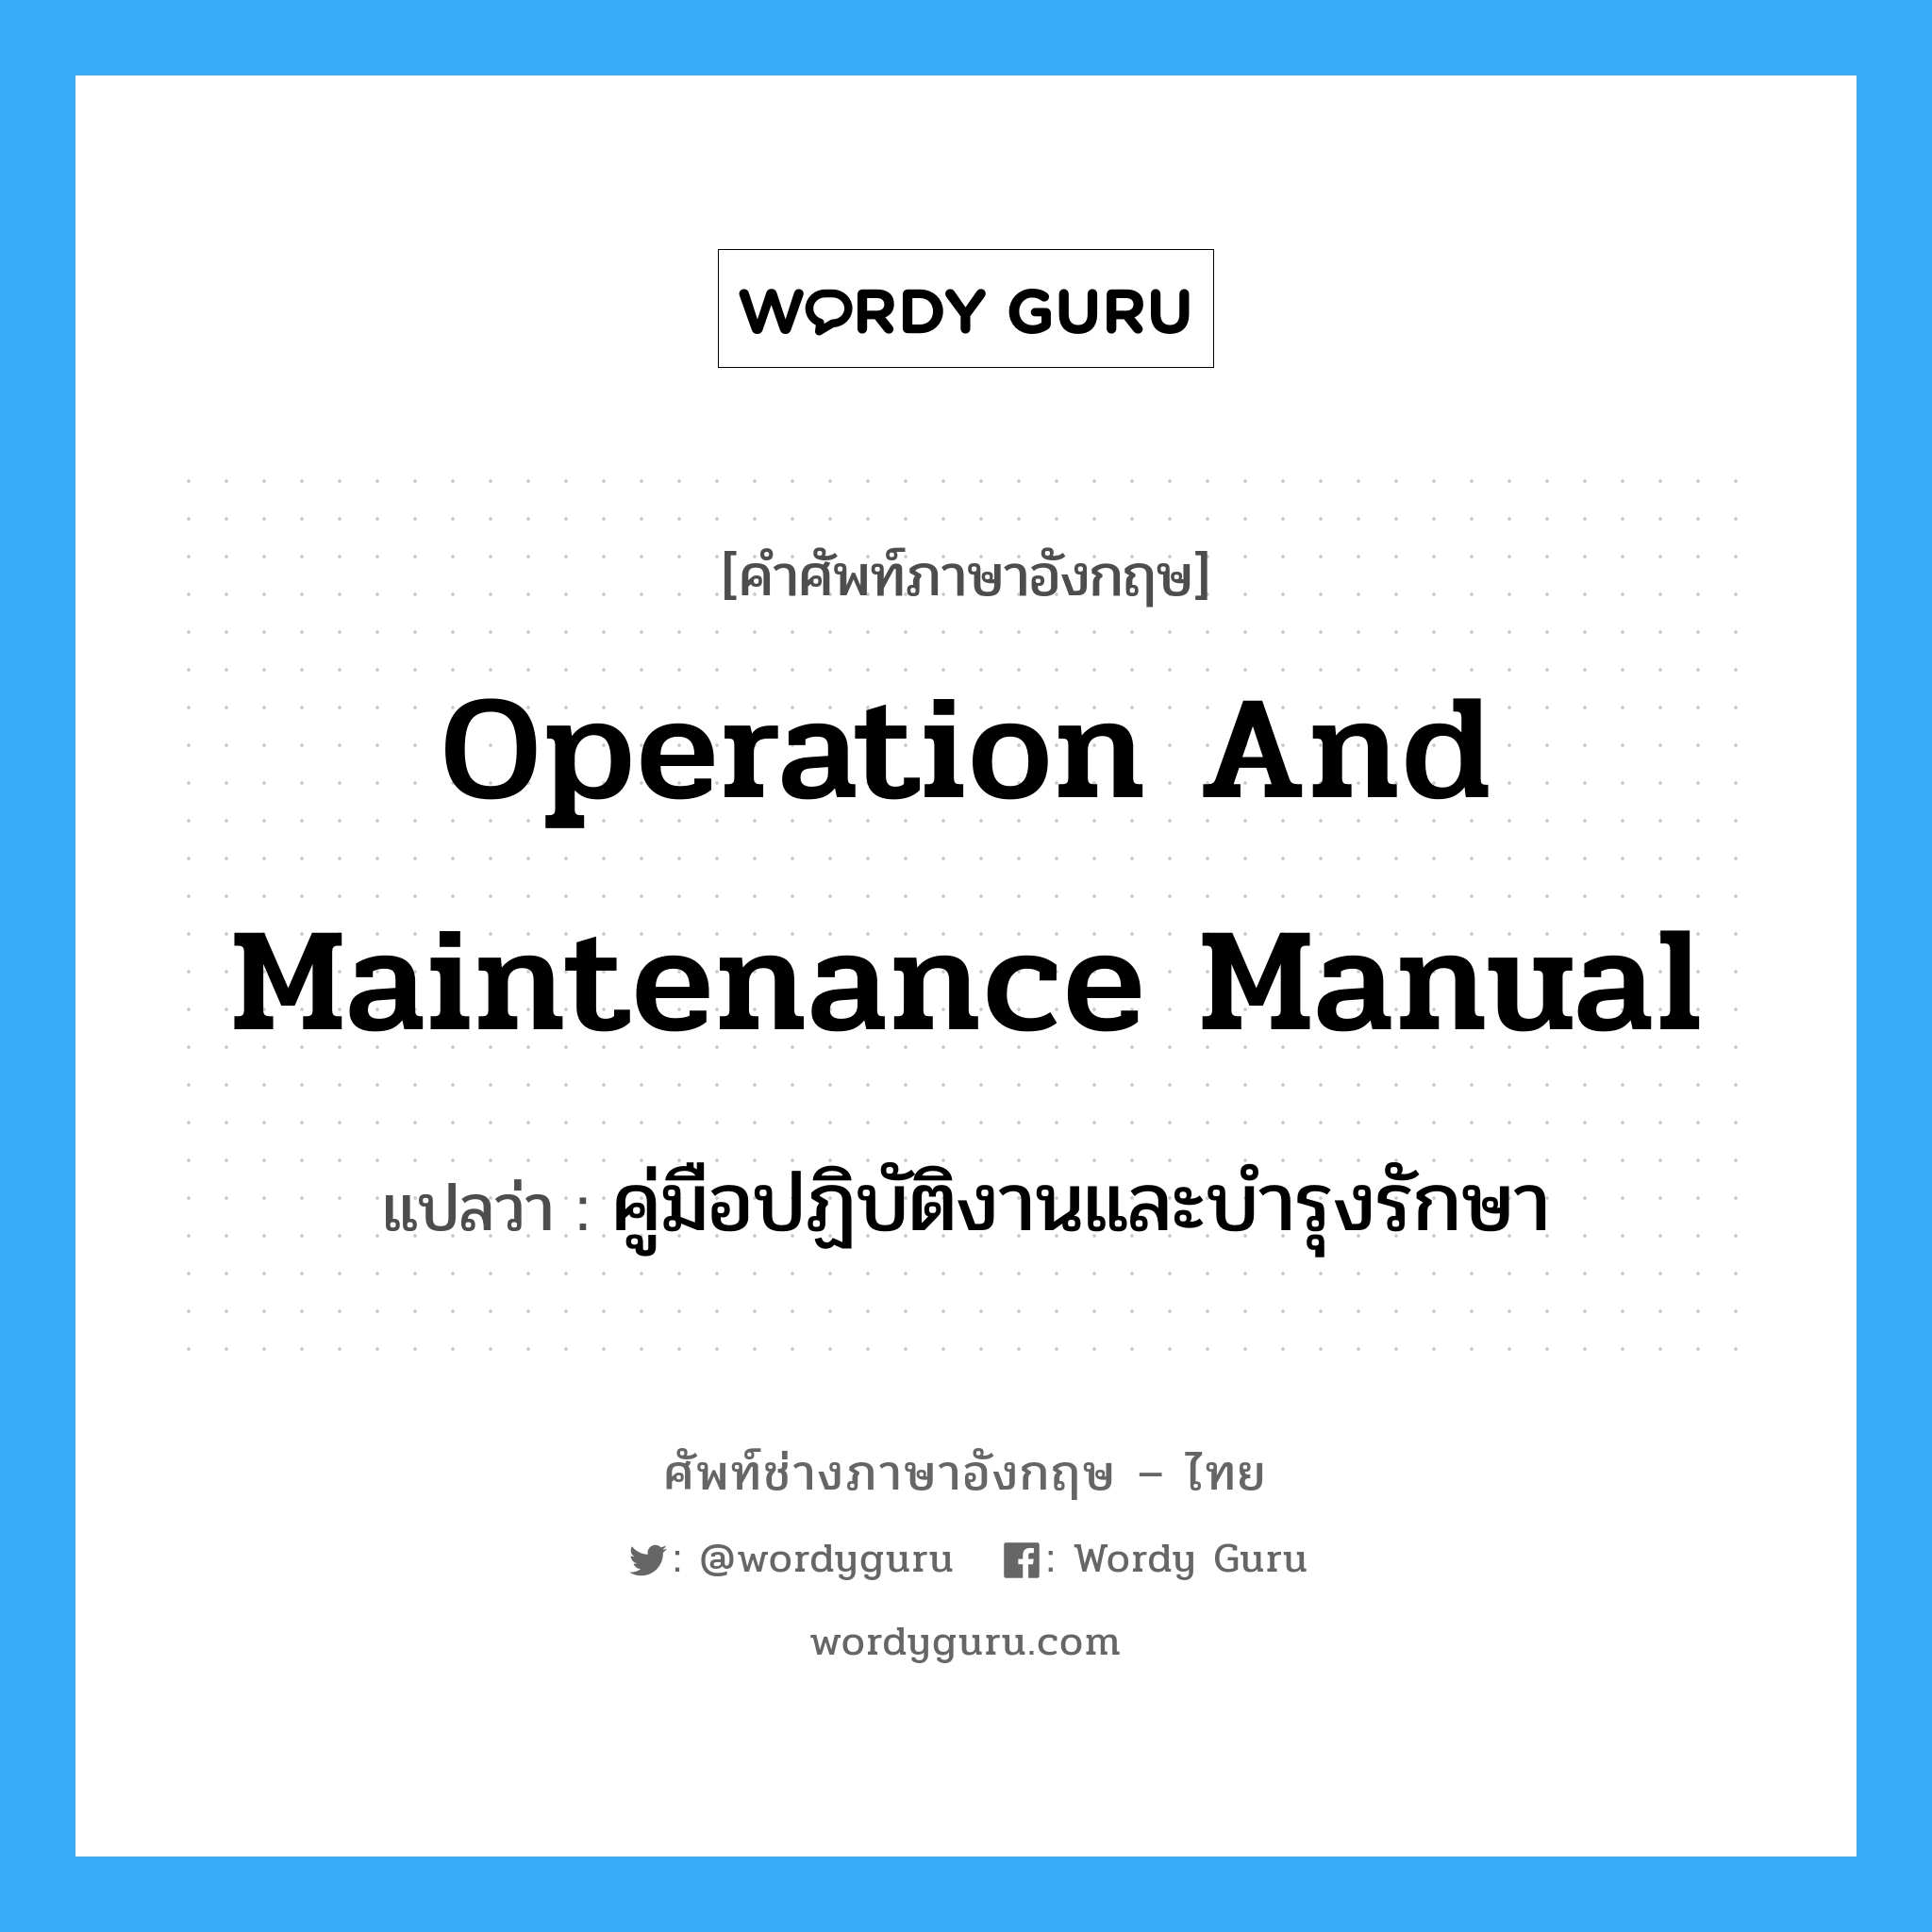 คู่มือปฏิบัติงานและบำรุงรักษา ภาษาอังกฤษ?, คำศัพท์ช่างภาษาอังกฤษ - ไทย คู่มือปฏิบัติงานและบำรุงรักษา คำศัพท์ภาษาอังกฤษ คู่มือปฏิบัติงานและบำรุงรักษา แปลว่า Operation and Maintenance Manual